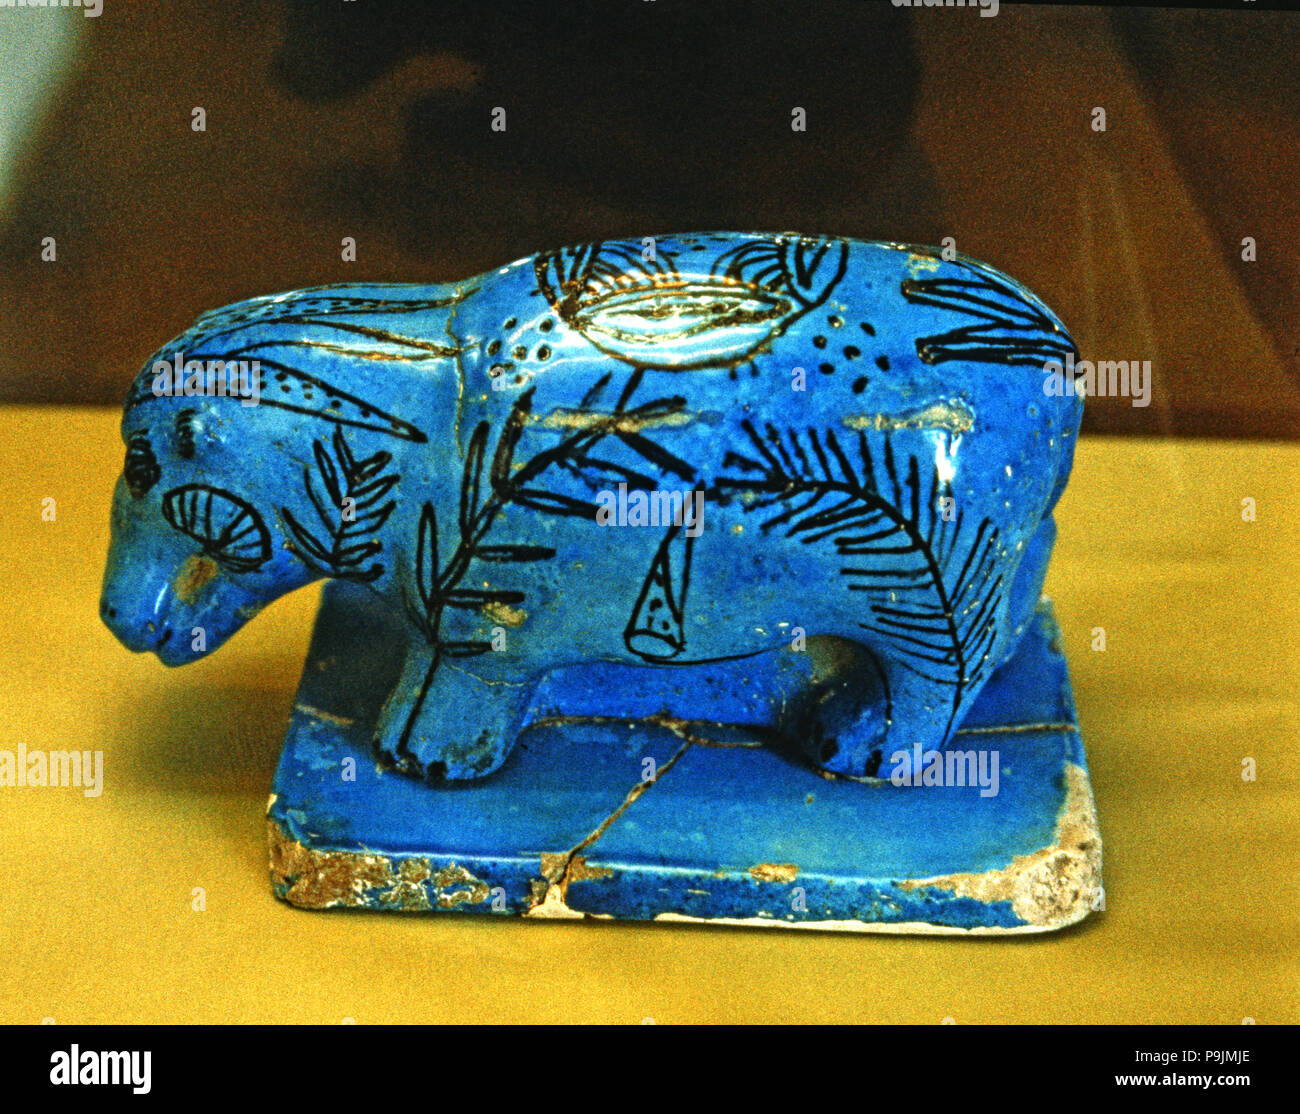 Hippo, blue glazed ceramic figurine, side view. Stock Photo